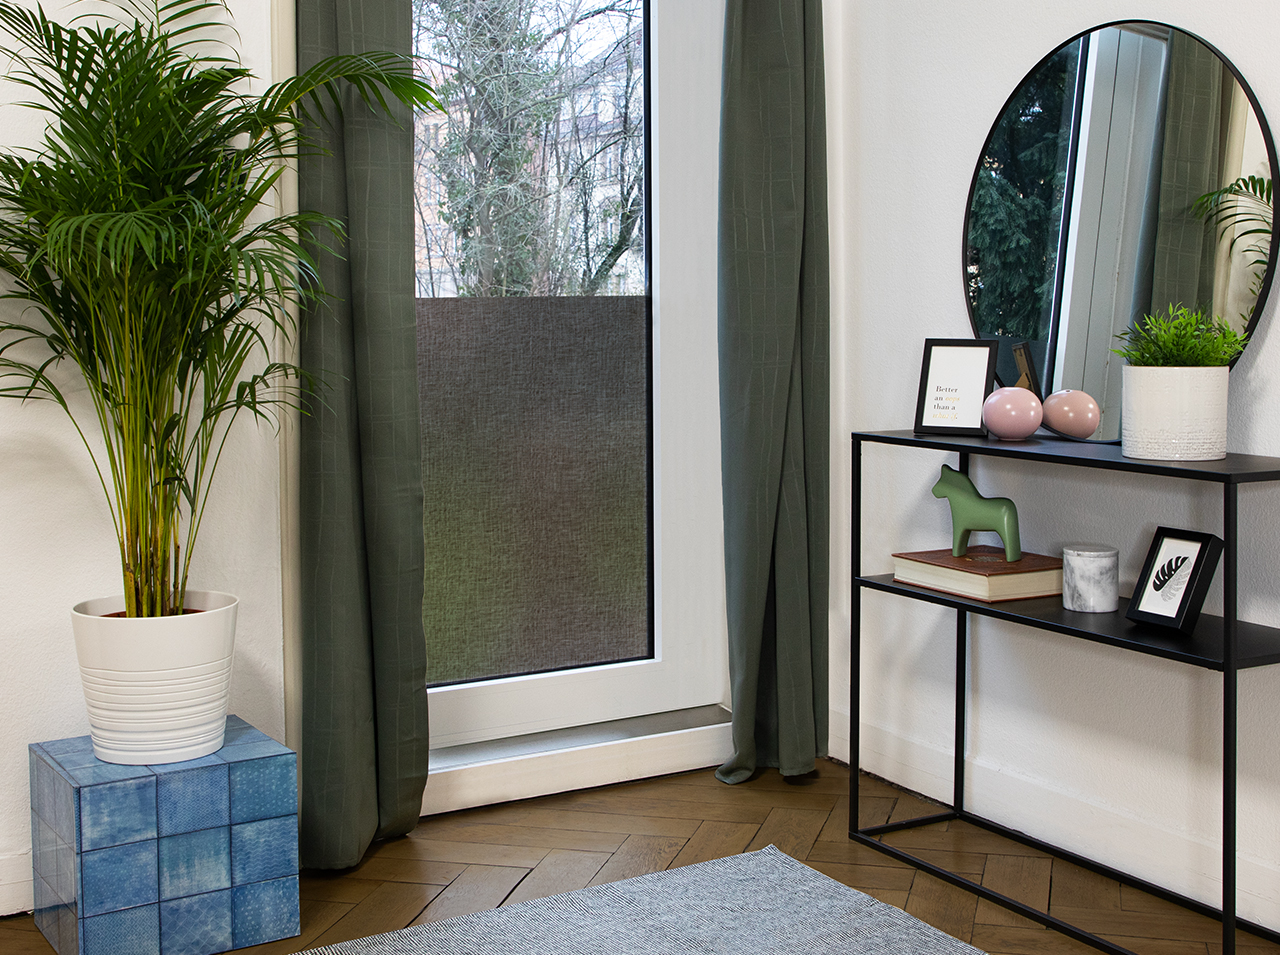 Fenster mit blickdichter Sichtschutzfolie in hellbrauner Textiloptik ausgestattet.